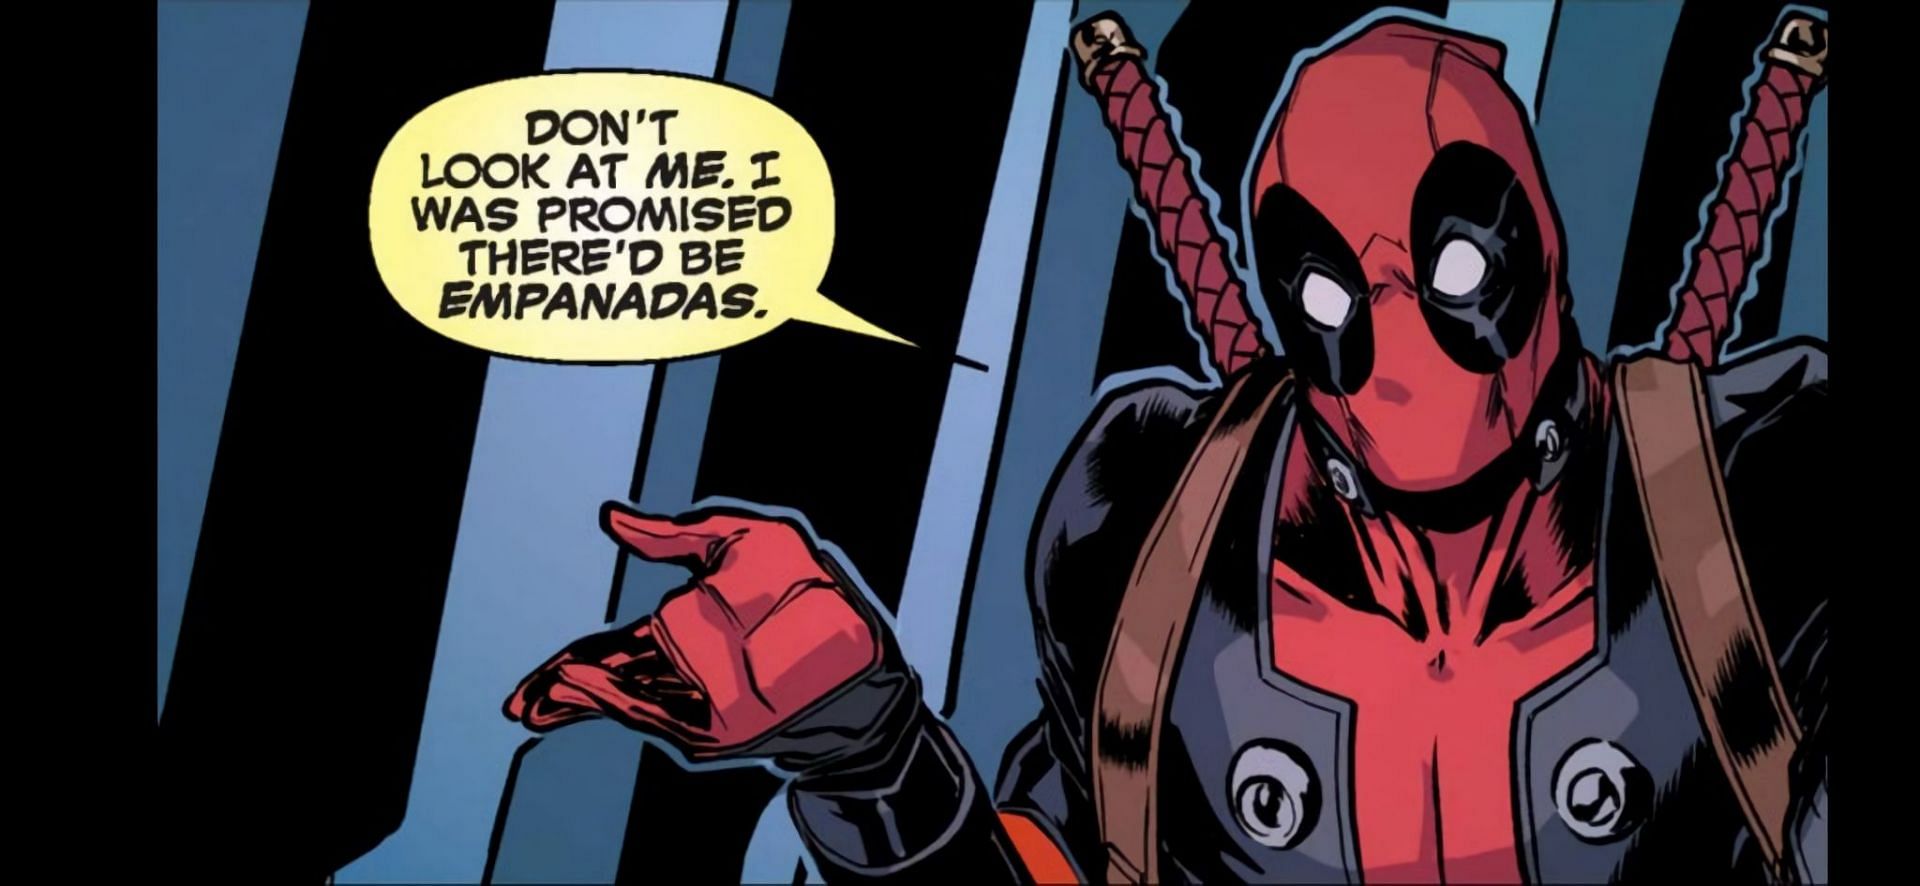 Deadpool (Image via Marvel Comics)